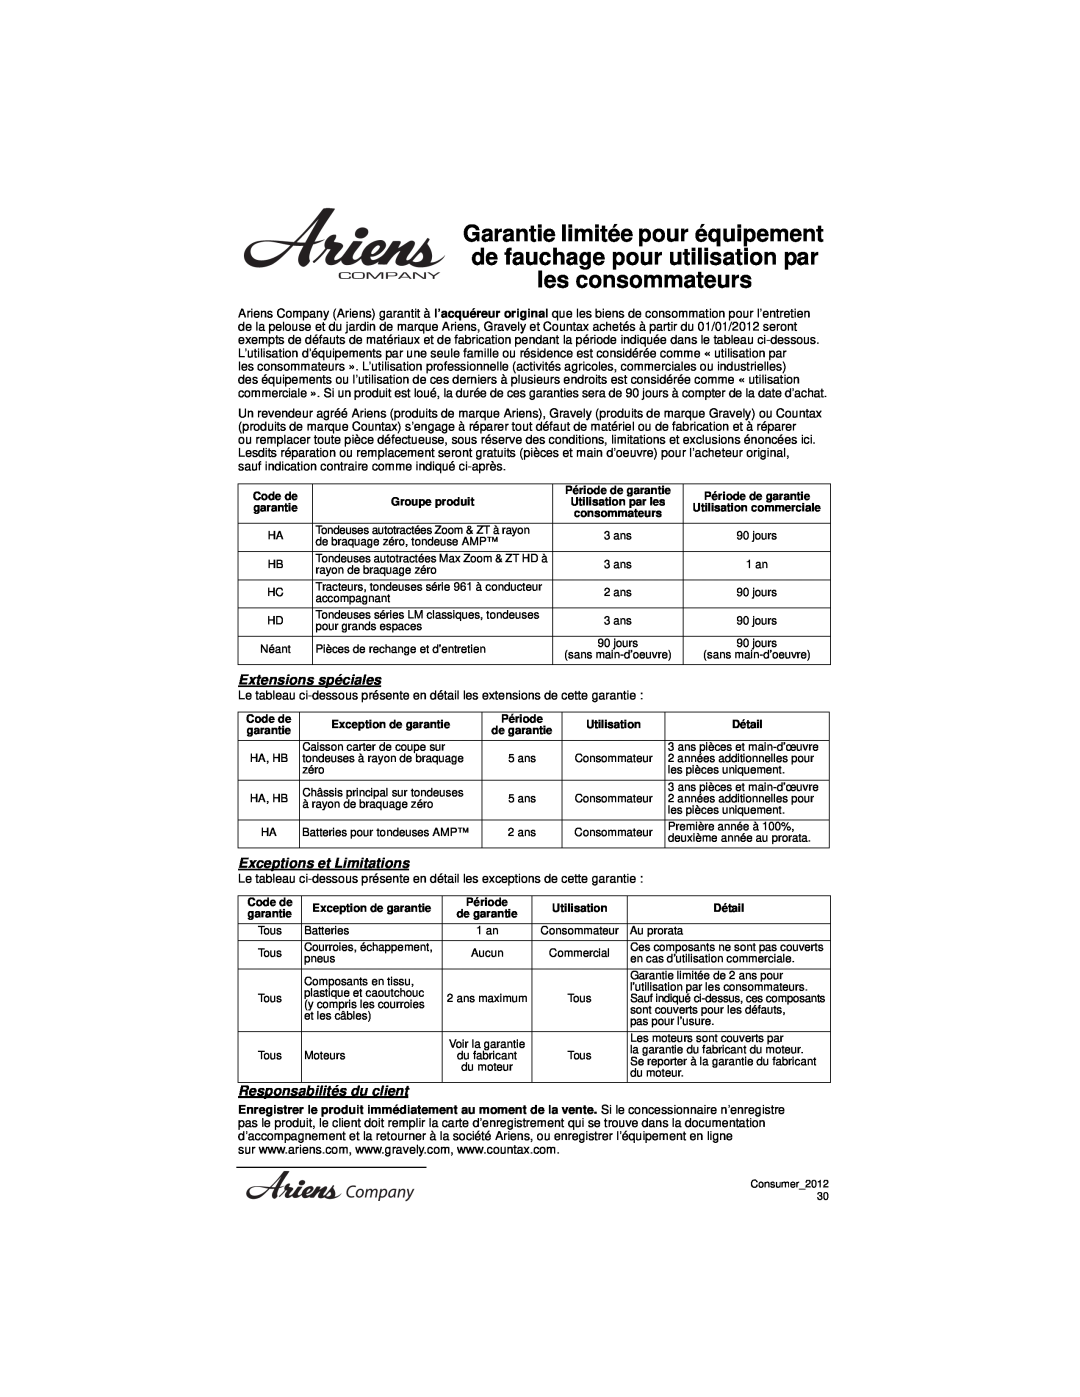 Ariens 911194 warranty Extensions spéciales, Exceptions et Limitations, Responsabilités du client, Groupe produit, Détail 